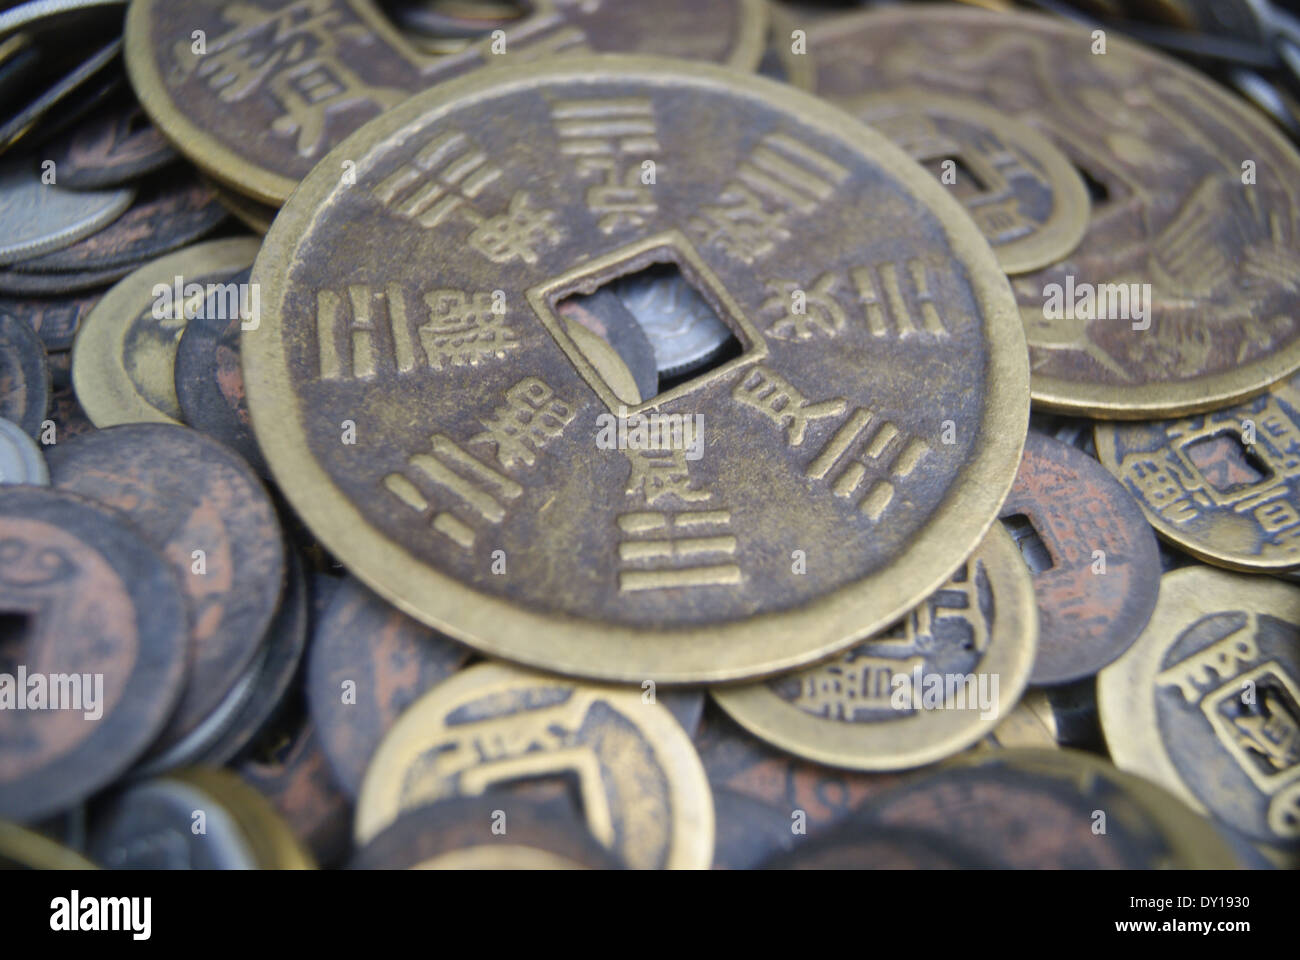 China monedas antiguas Foto de stock